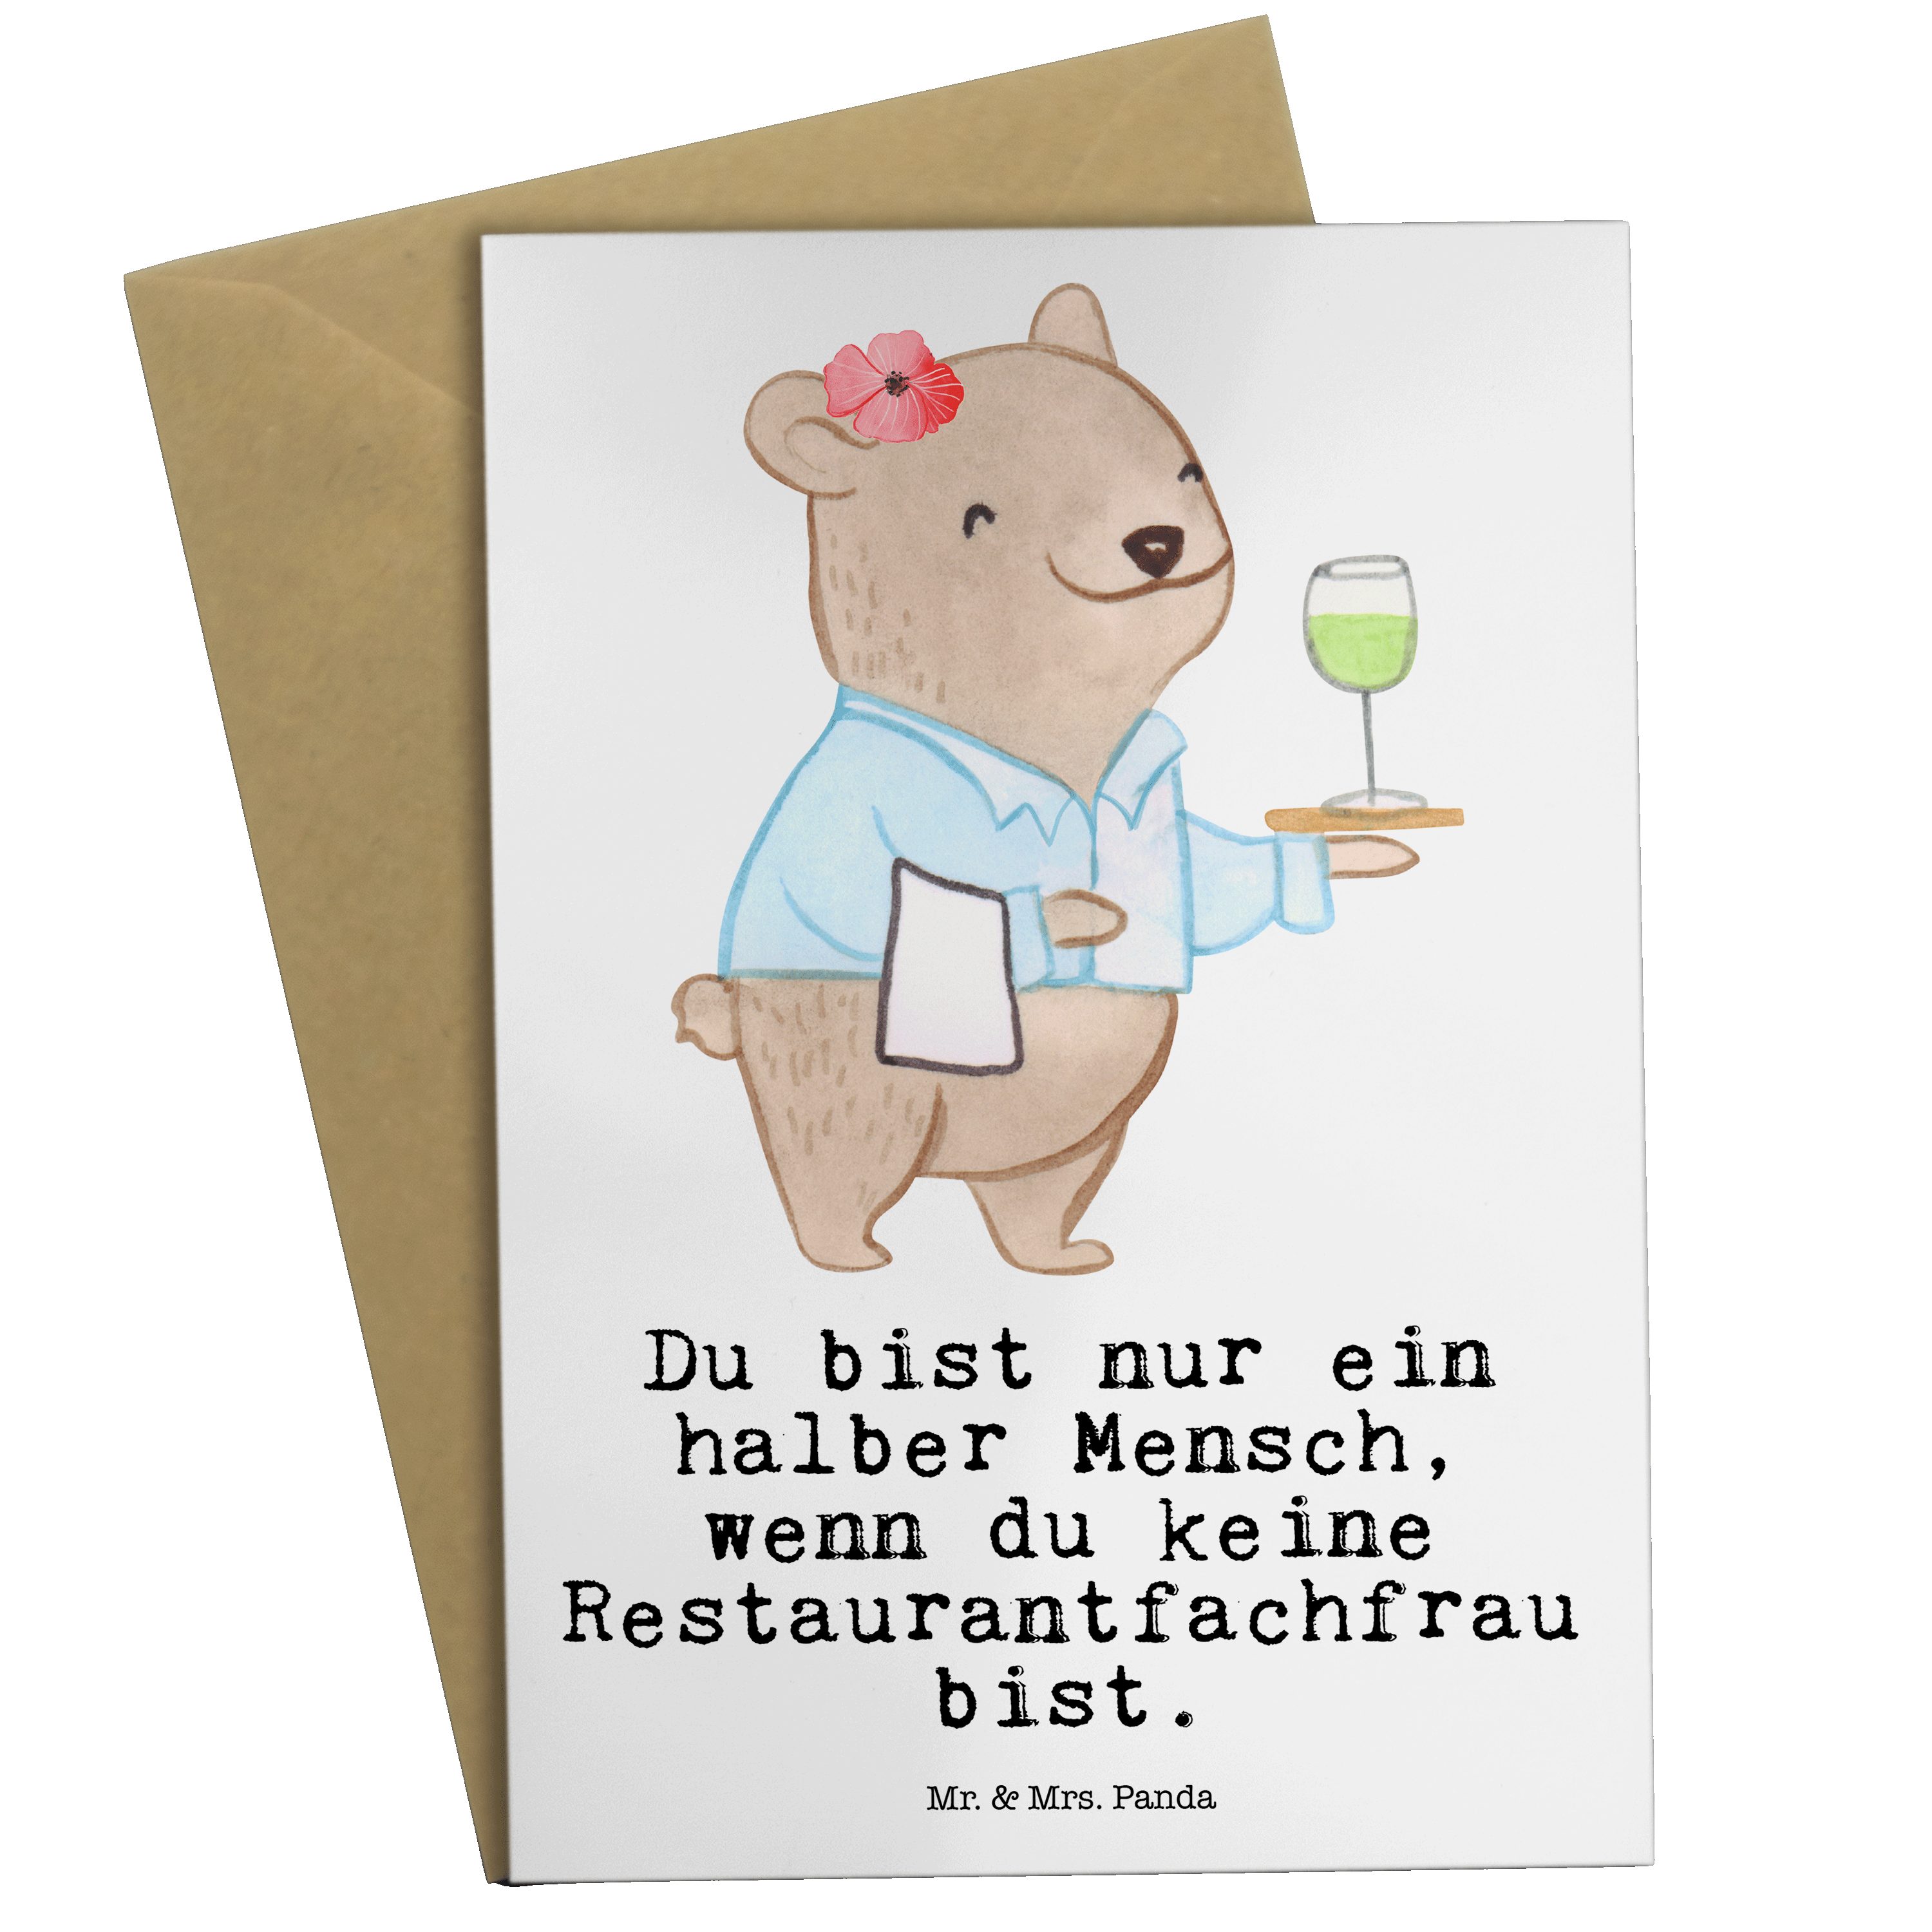 Mr. & Mrs. Panda Grußkarte Restaurantfachfrau mit Herz - Weiß - Geschenk, Klappkarte, Geburtstag